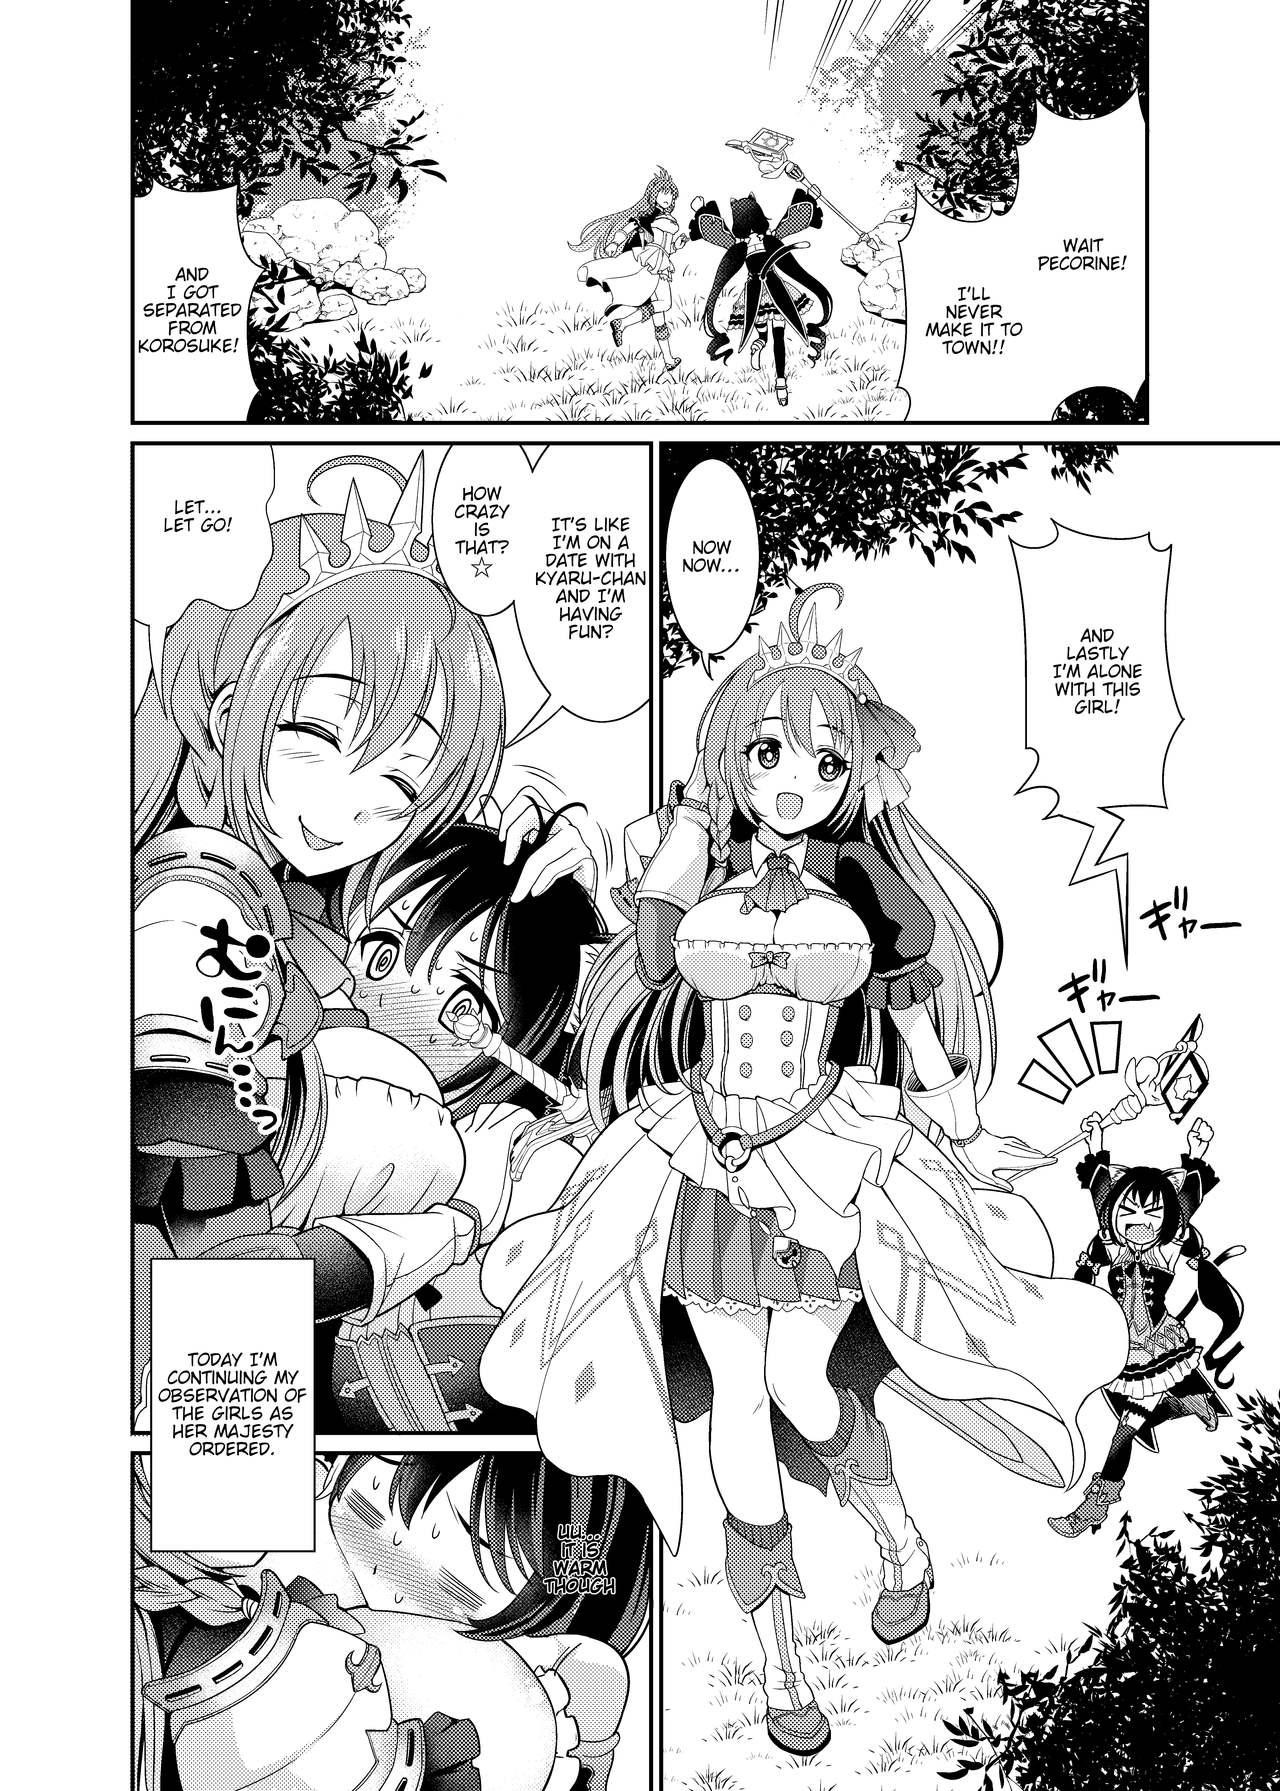 Dirty Talk Mamono nante Taberu kara... Ochinchin ga Haechau no yo!! - Princess connect First - Page 4